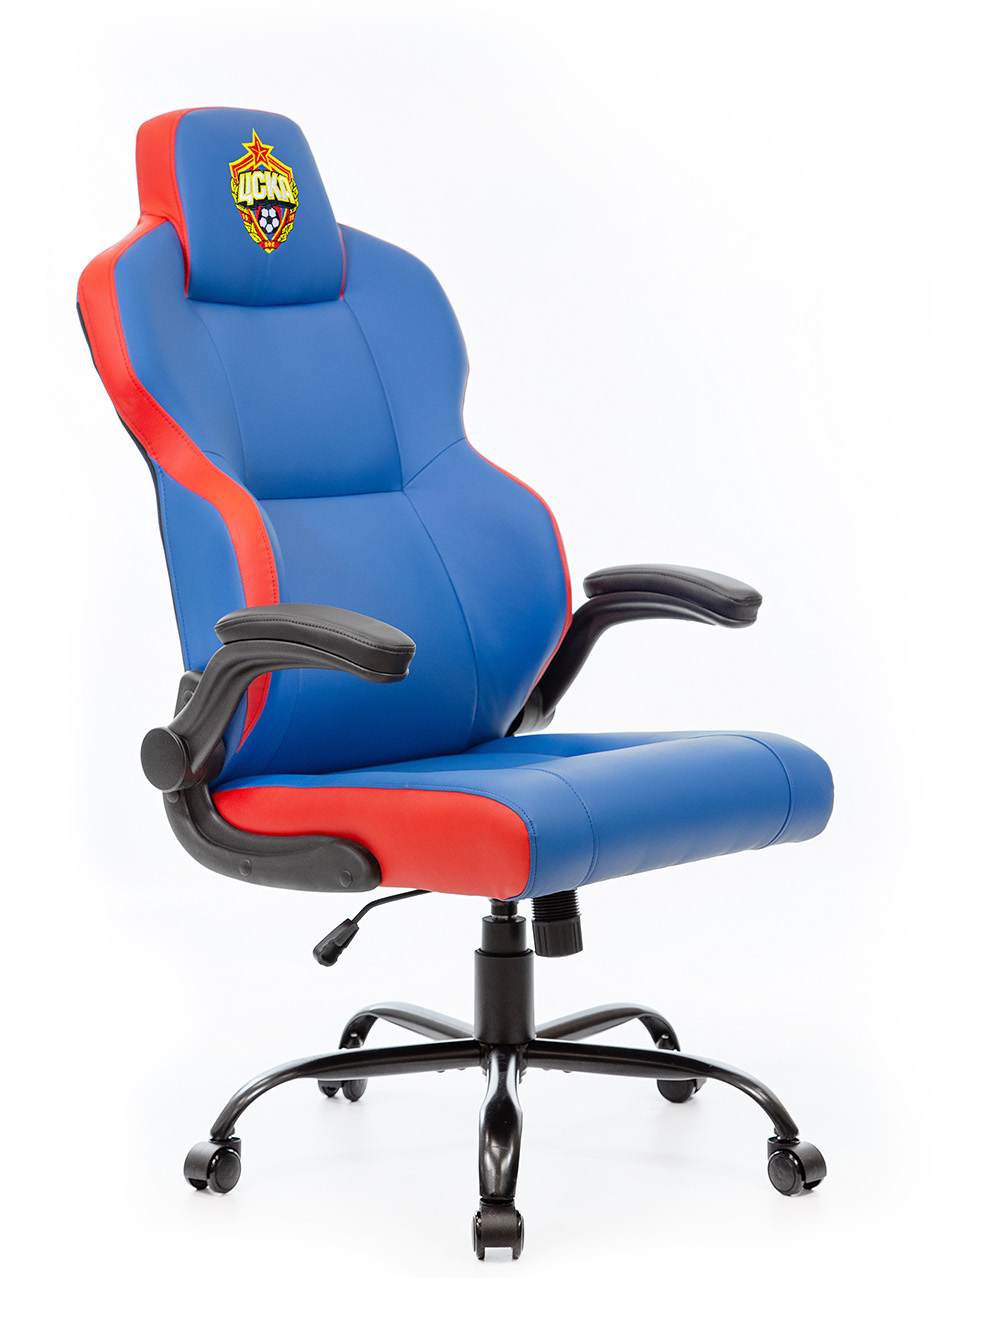 Кресло игровое компьютерное красно-синее с эмблемой ПФК ЦСКА КУБ ООО